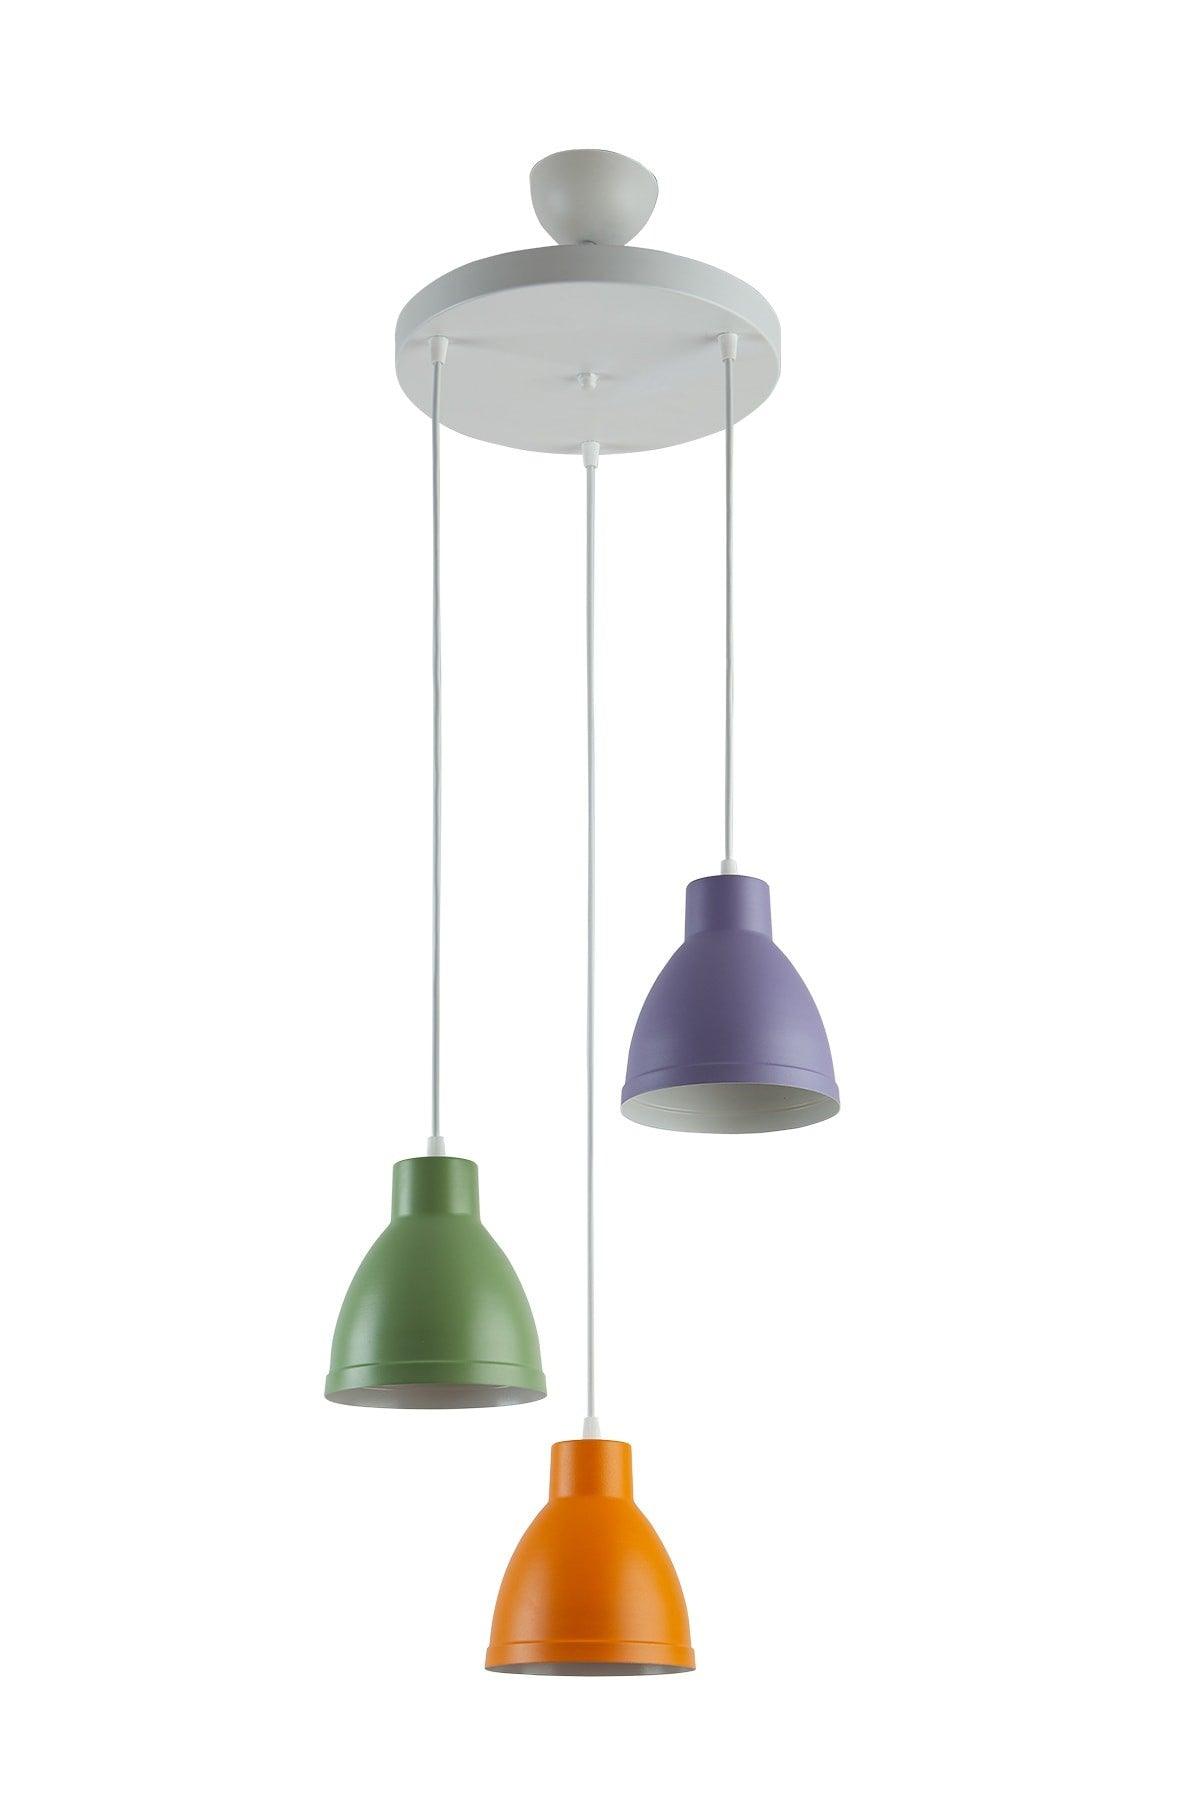 Enzo Special Design Modern Sports Decorative Cafe-kitchen Green - Orange - Lilac 3 Pcs Suspended Chandelier - Swordslife